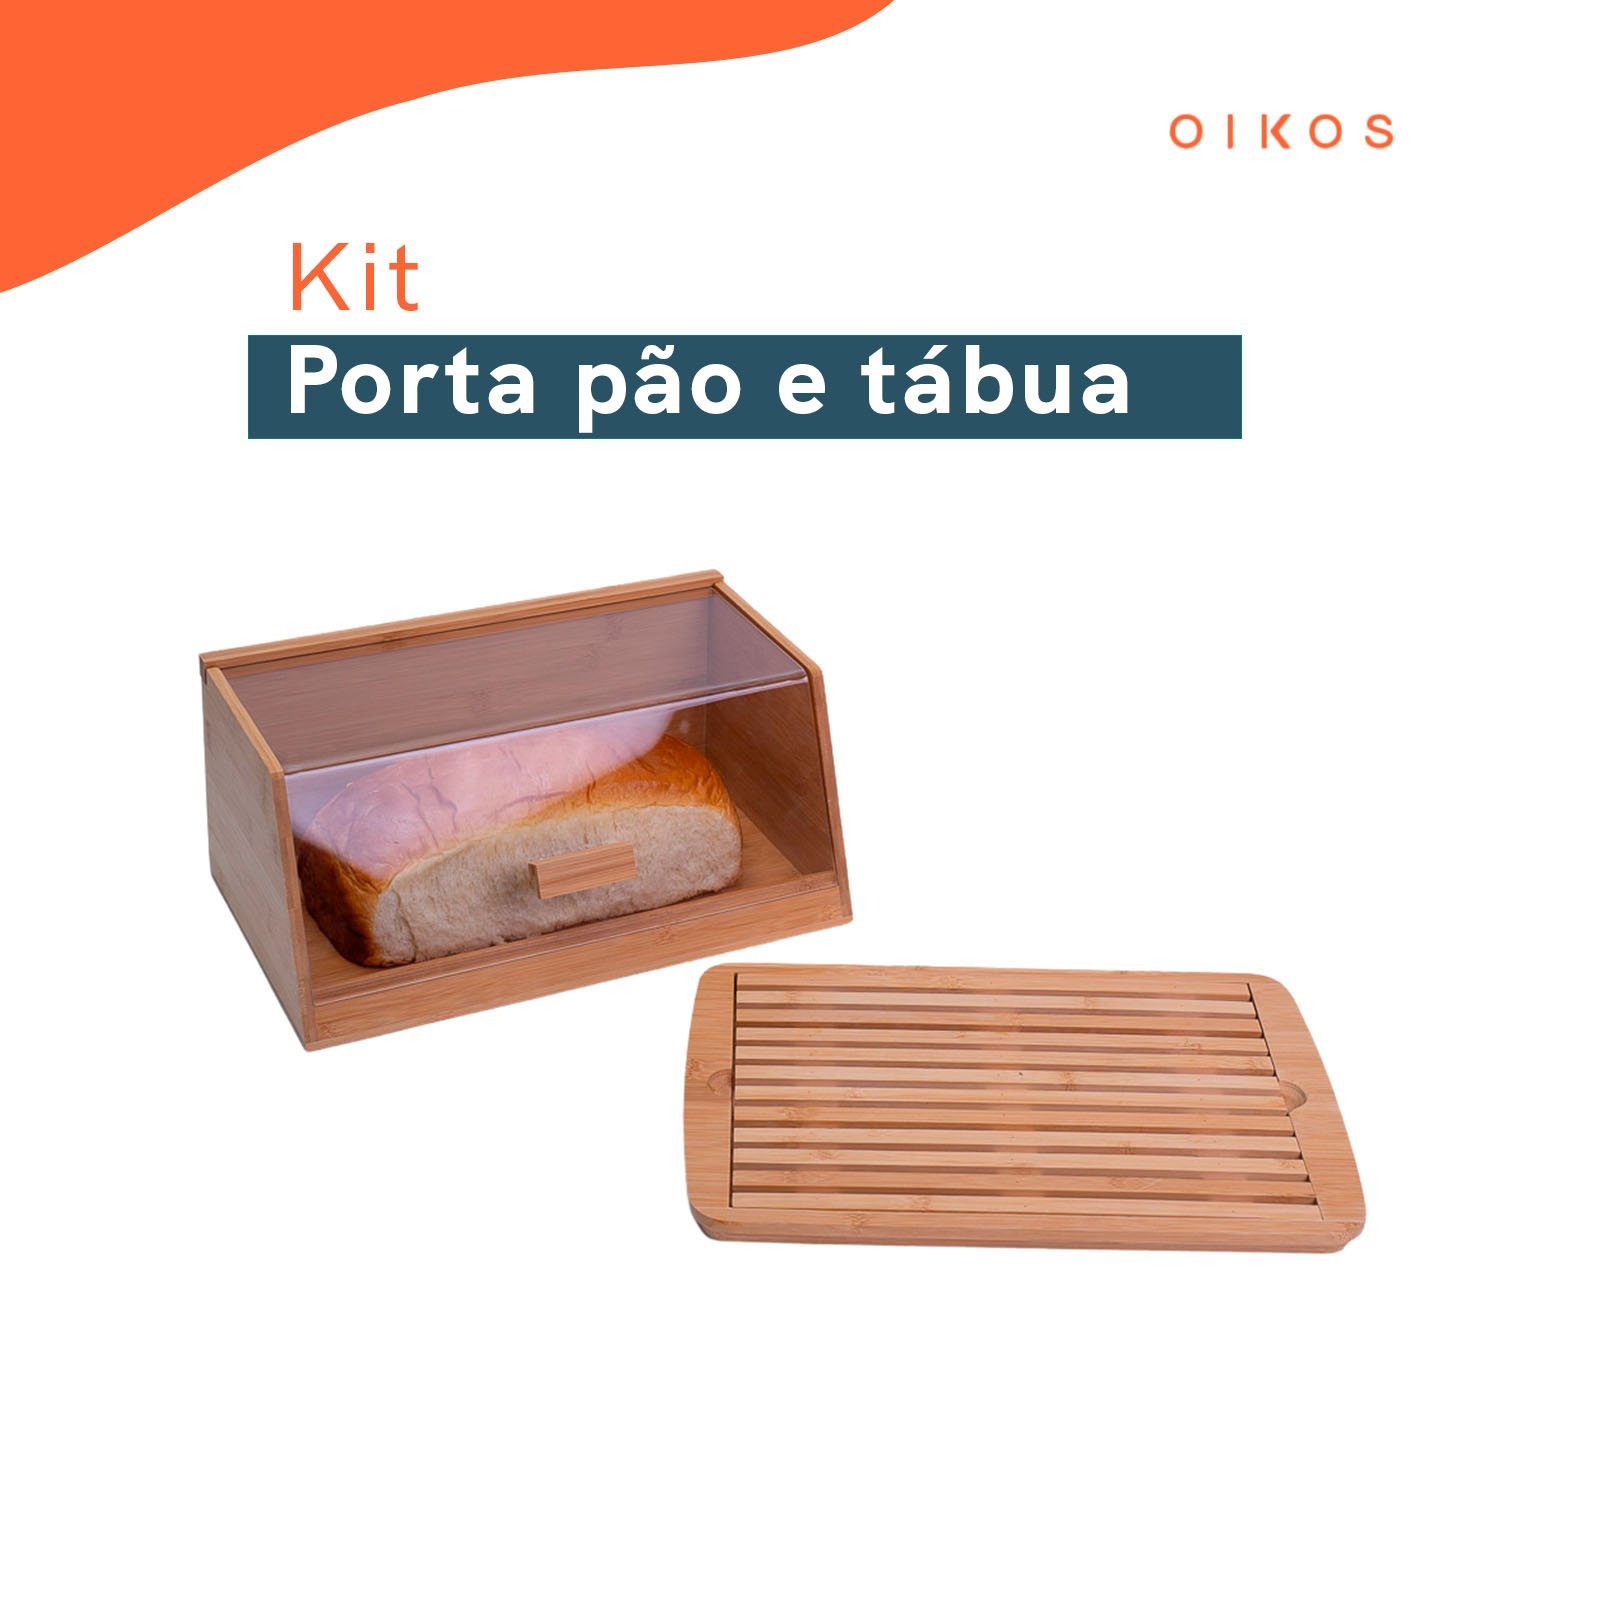 Kit com porta pão de bambu 35 cm e tábua migalheira de pão em bambu - Oikos - 2